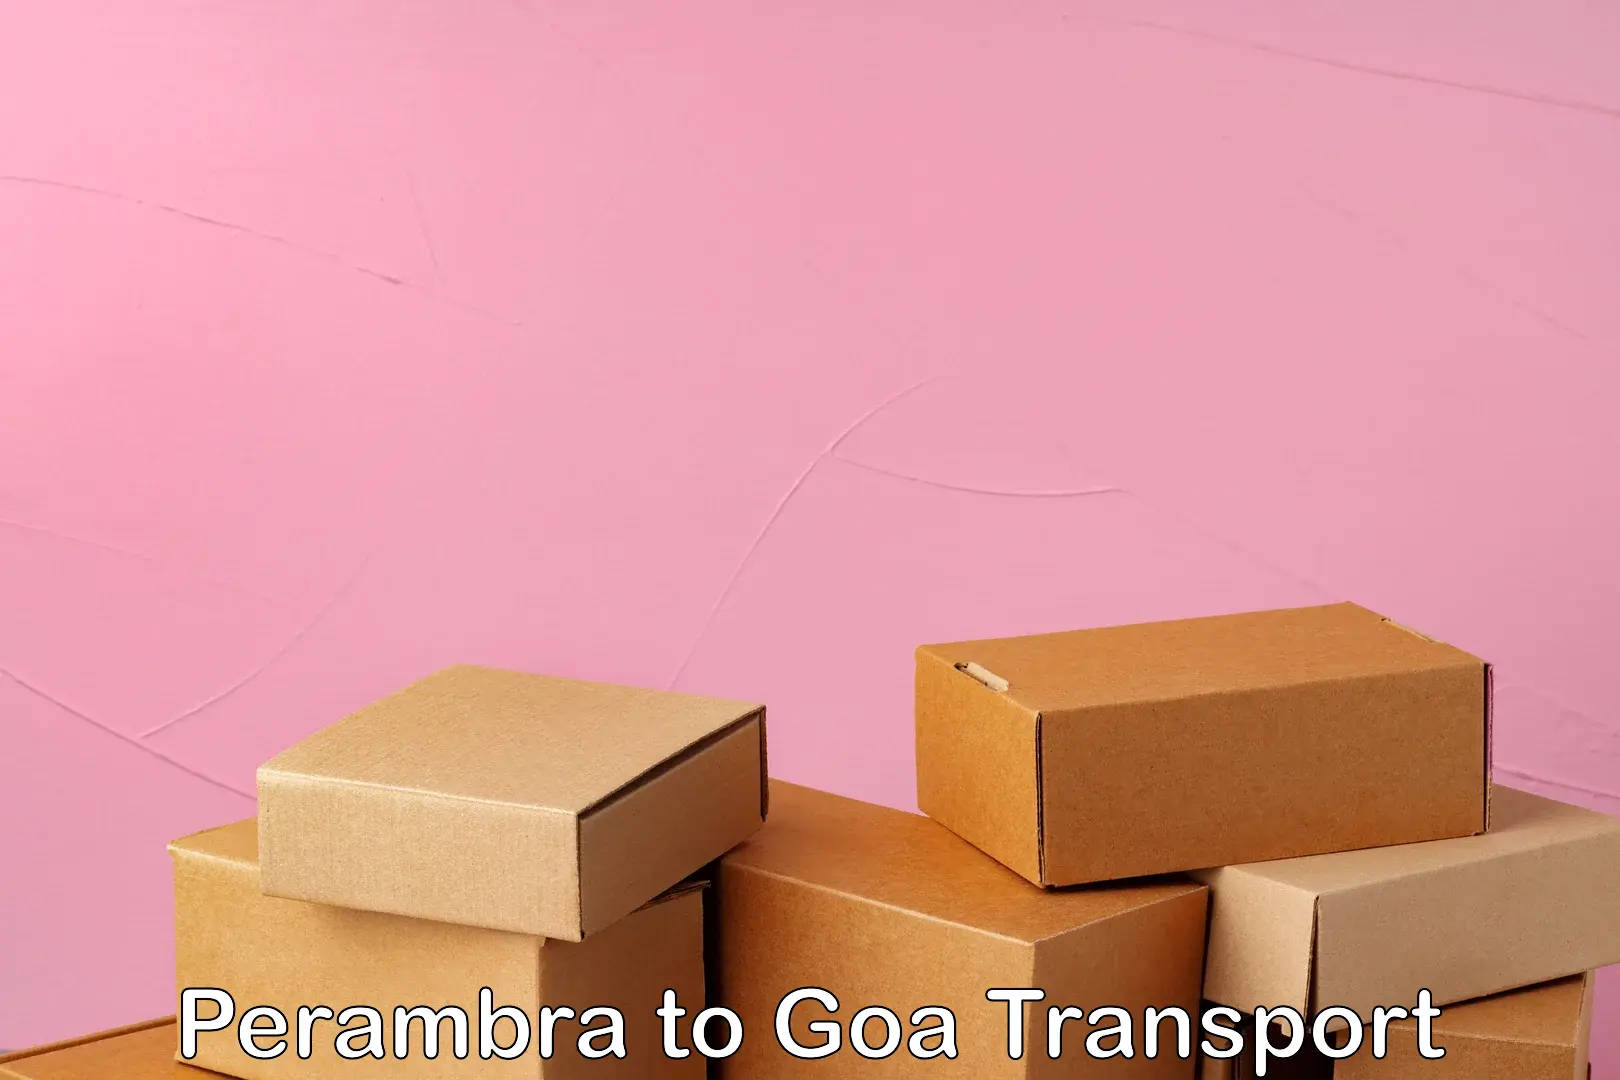 Furniture transport service Perambra to Goa